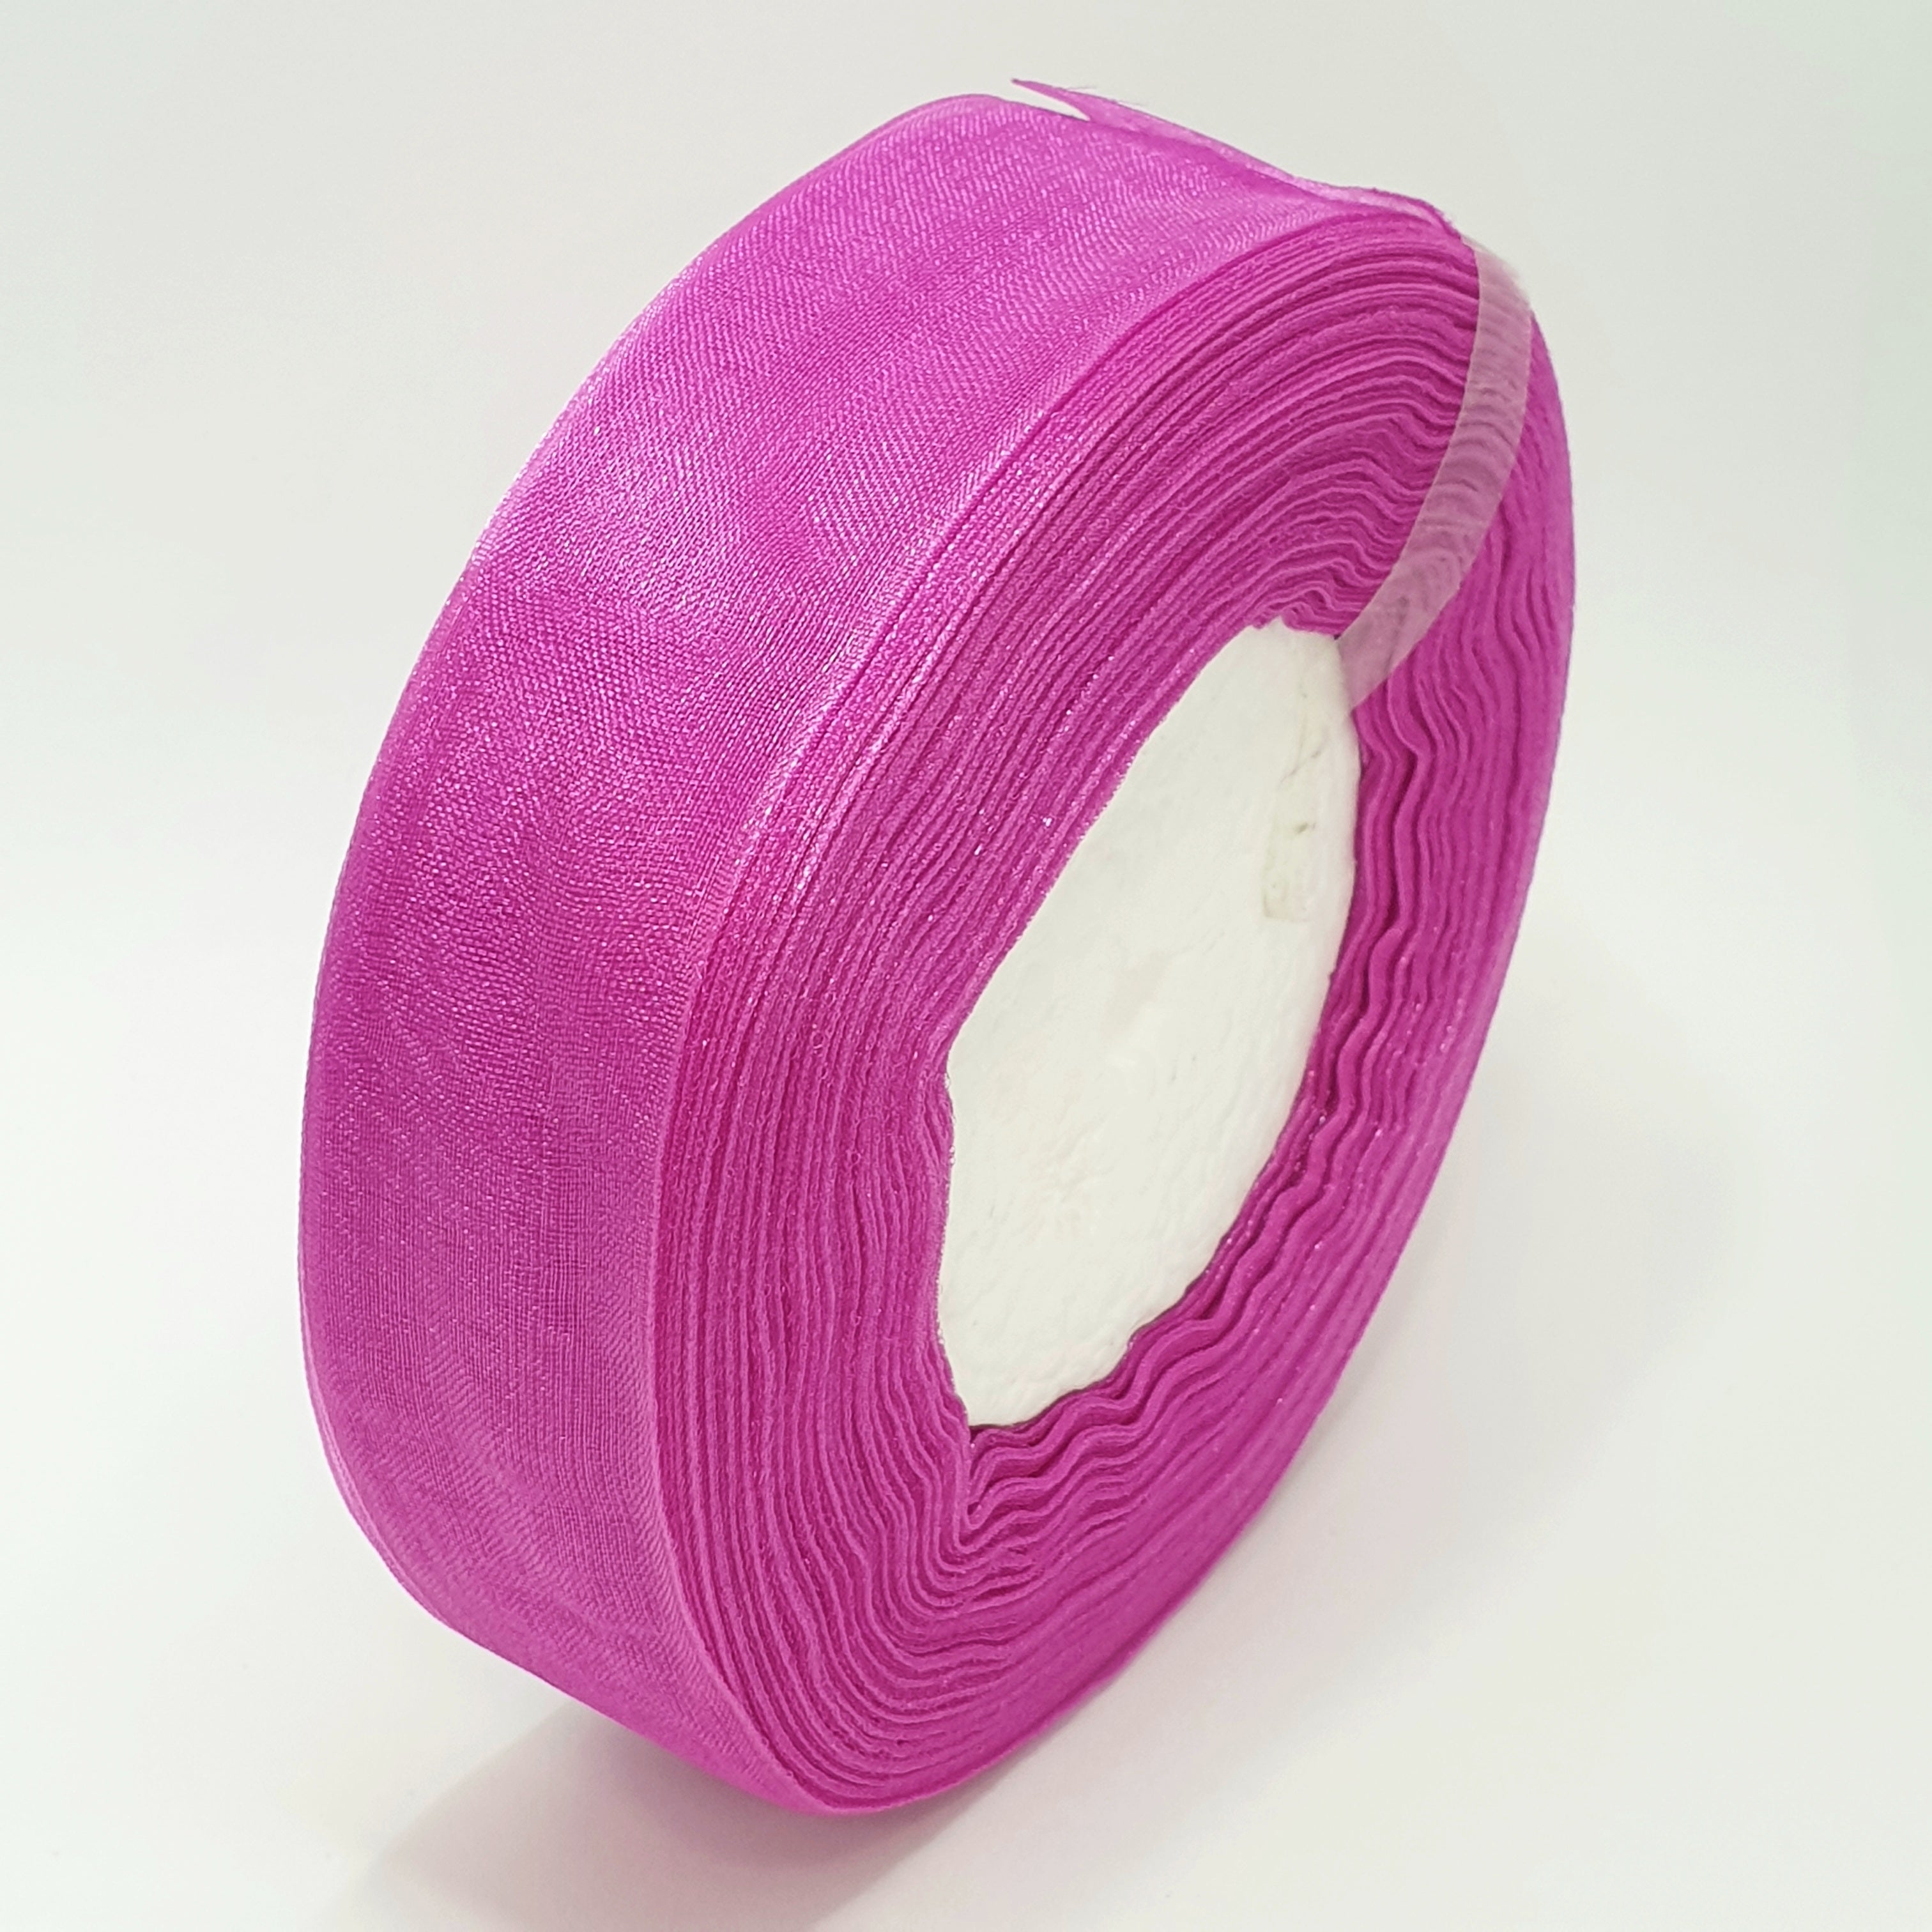 MajorCrafts 25mm 45metres Sheer Organza Fabric Ribbon Roll Pink Shade R1169